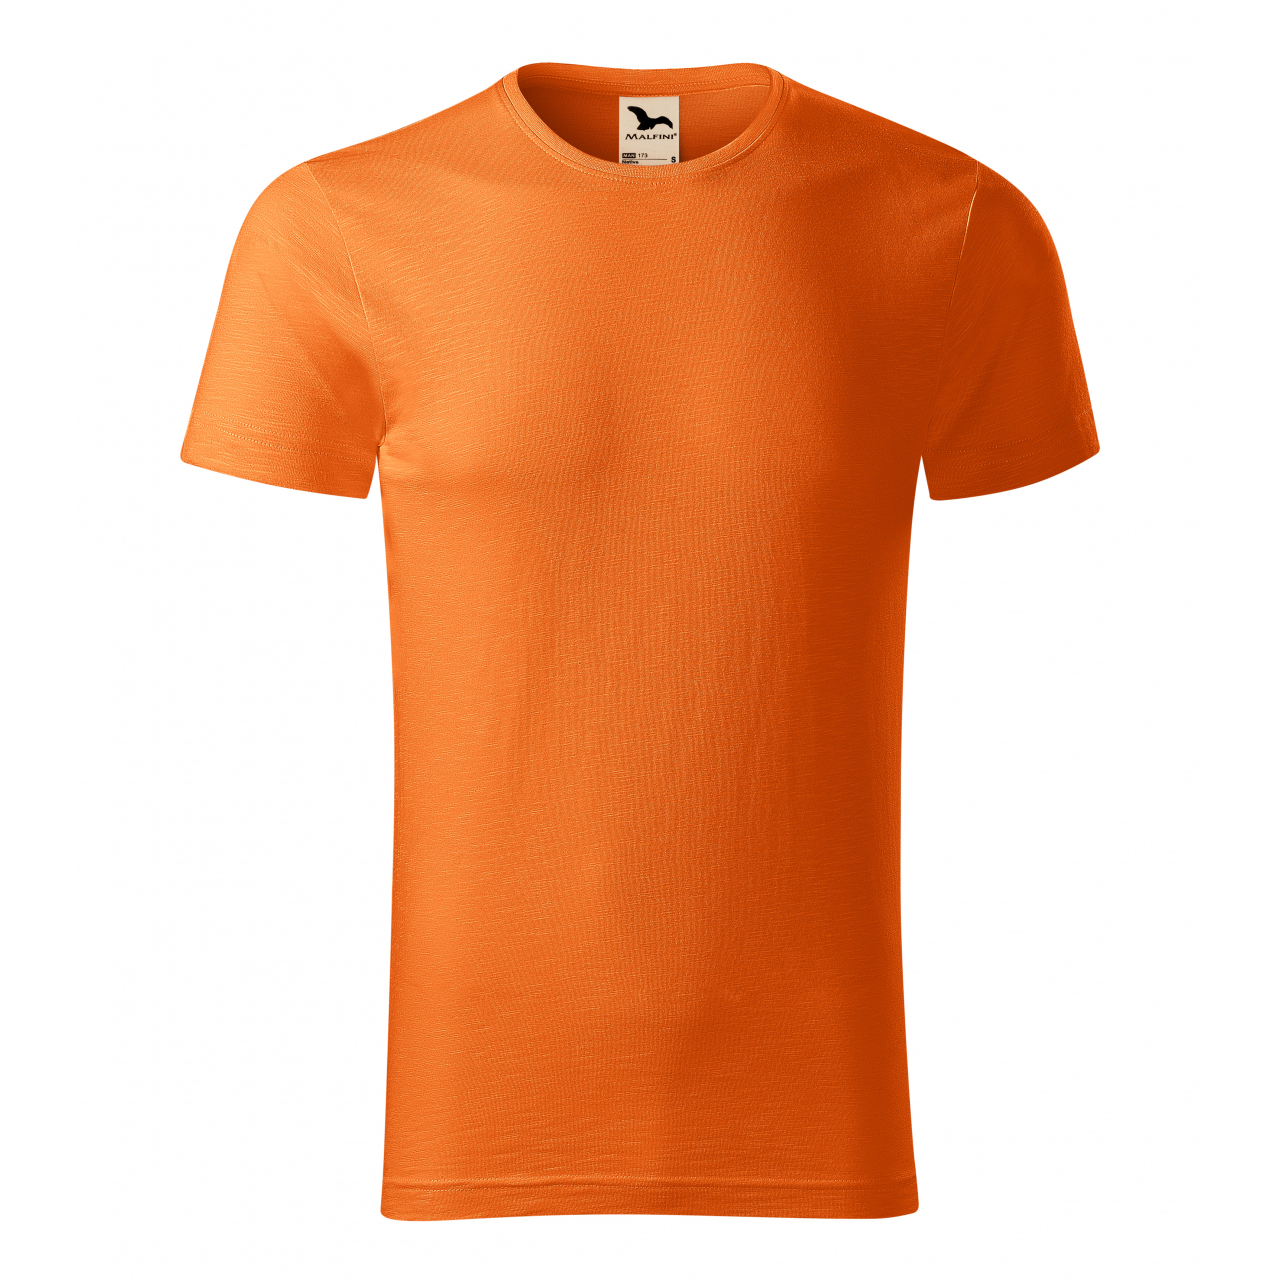 Tričko pánské Malfini Native - oranžové, XL